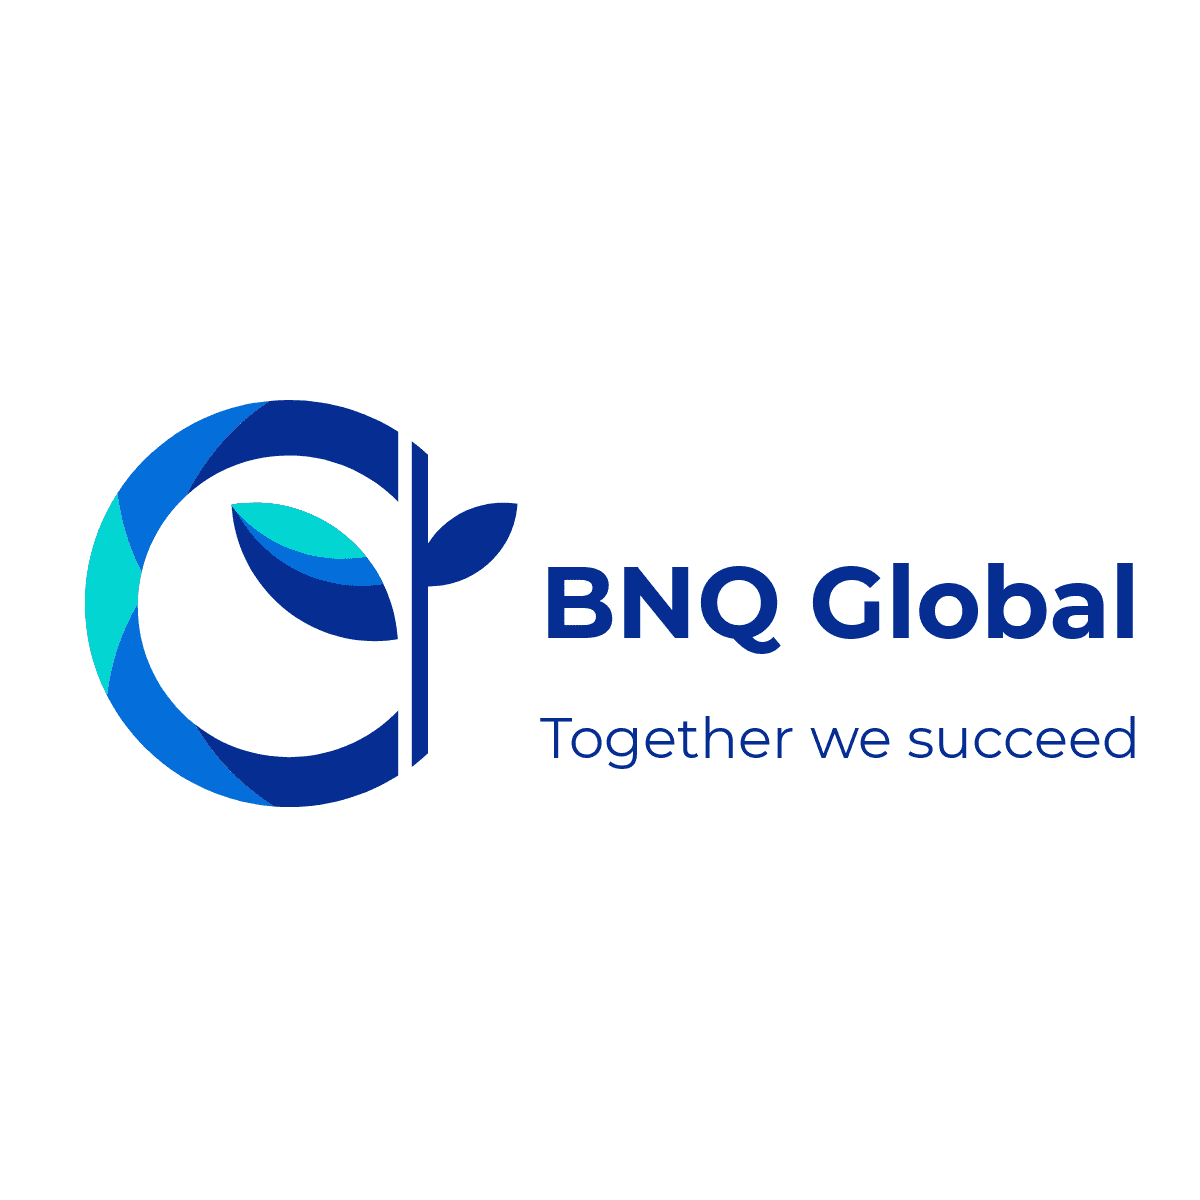 BNQ Global